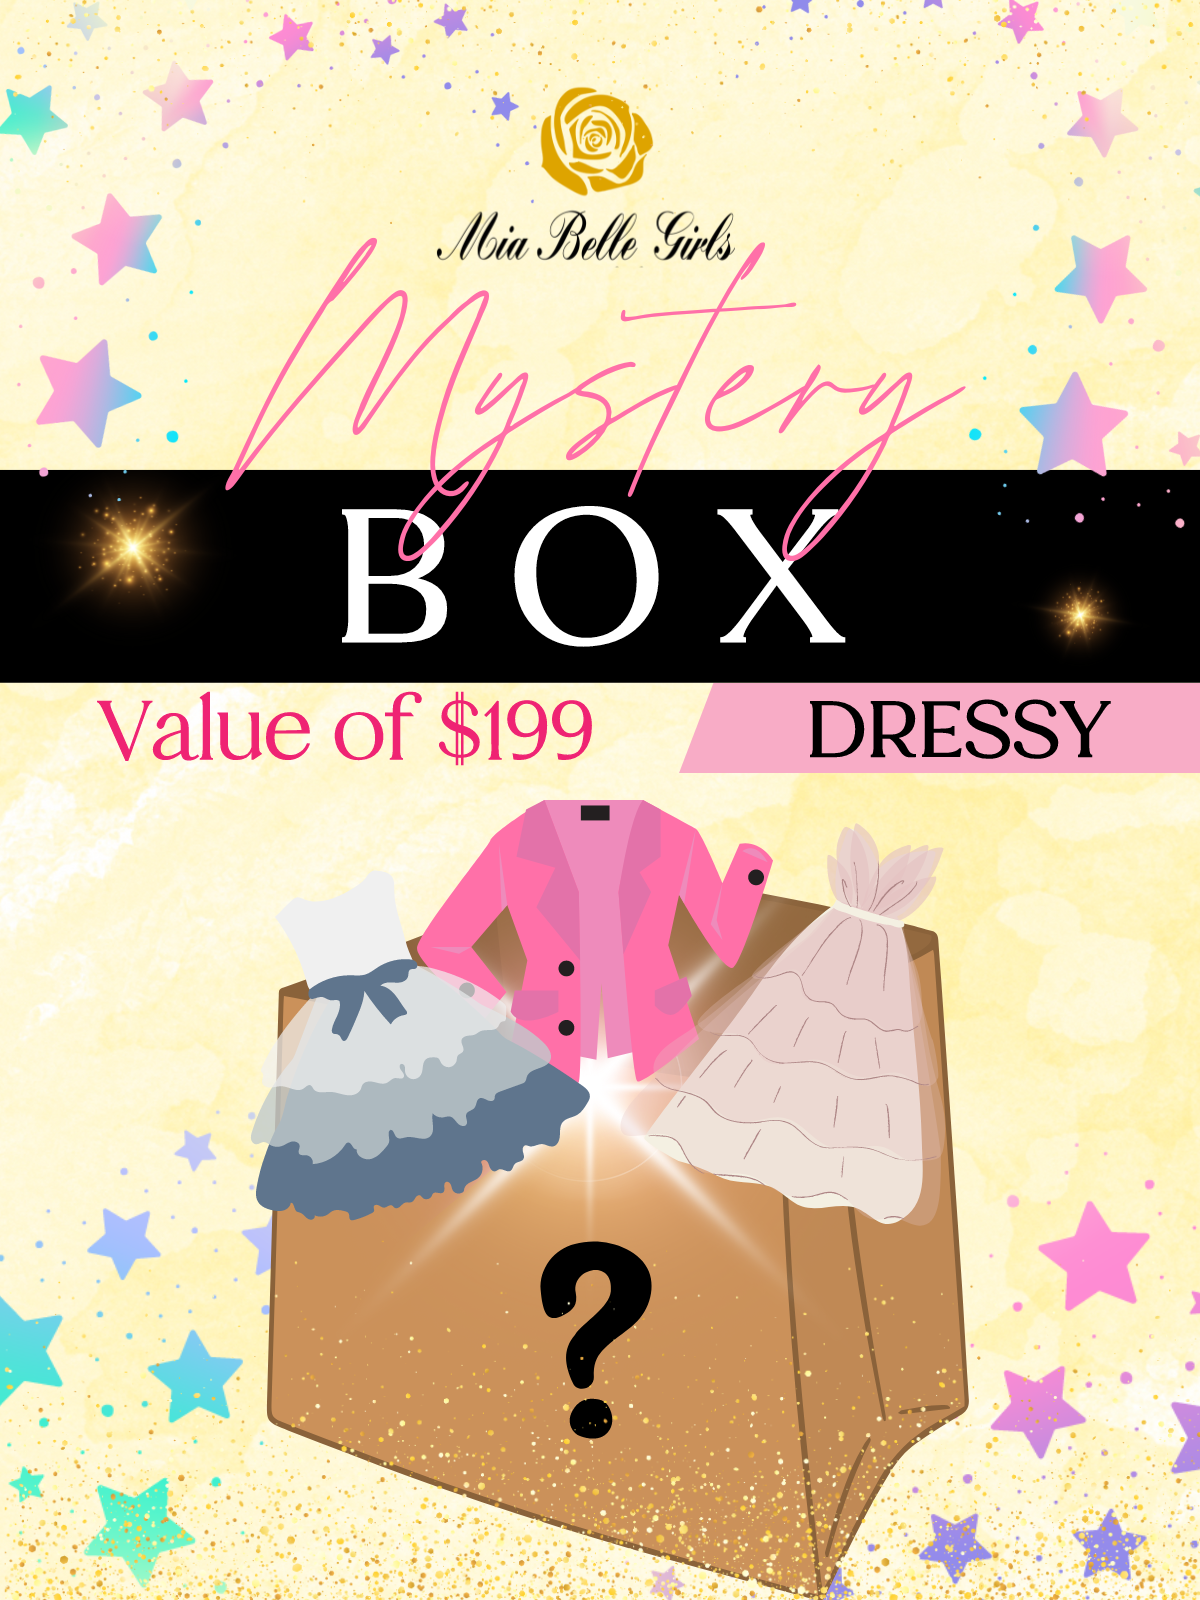 Mystery Box - 3 Dressy Styles